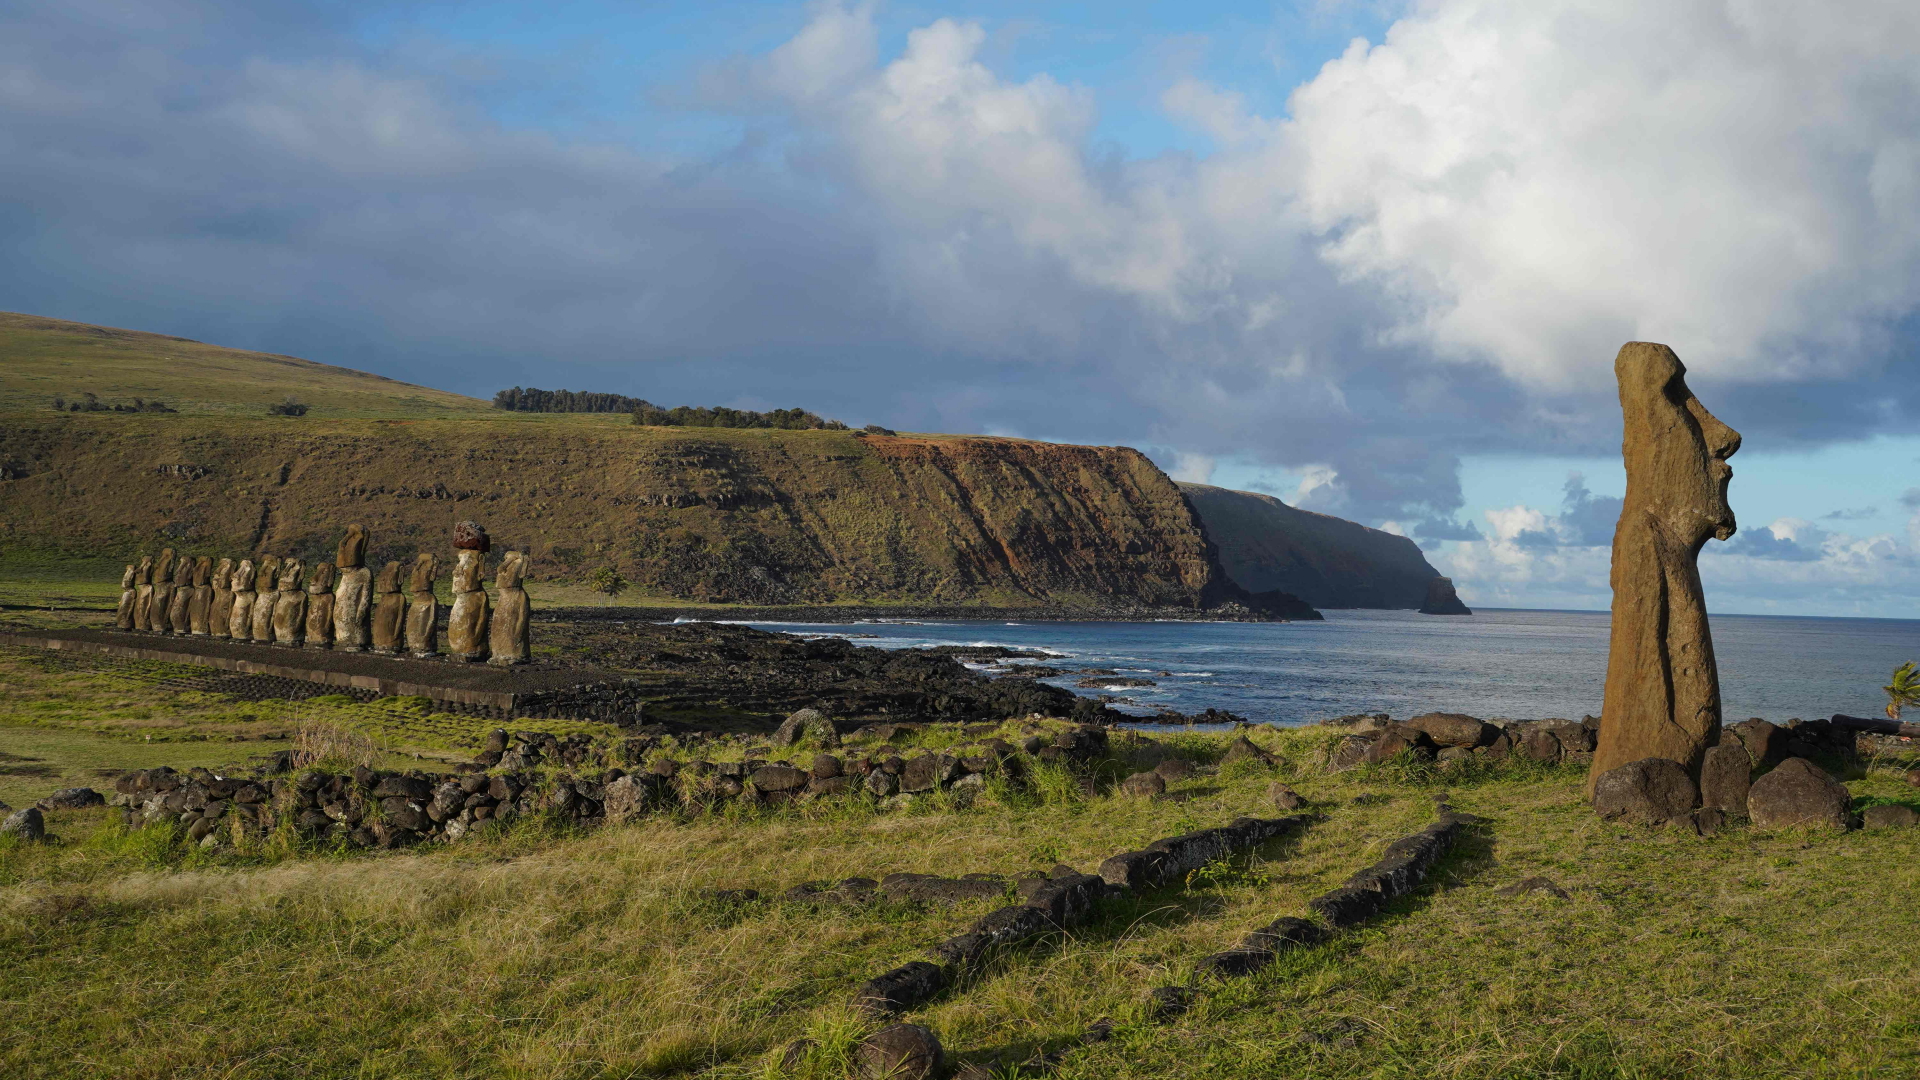 Moai-Statuen auf Rapa Nui, der Osterinsel, 3700 Kilometer von der chilenischen Küste entfernt. | AFP